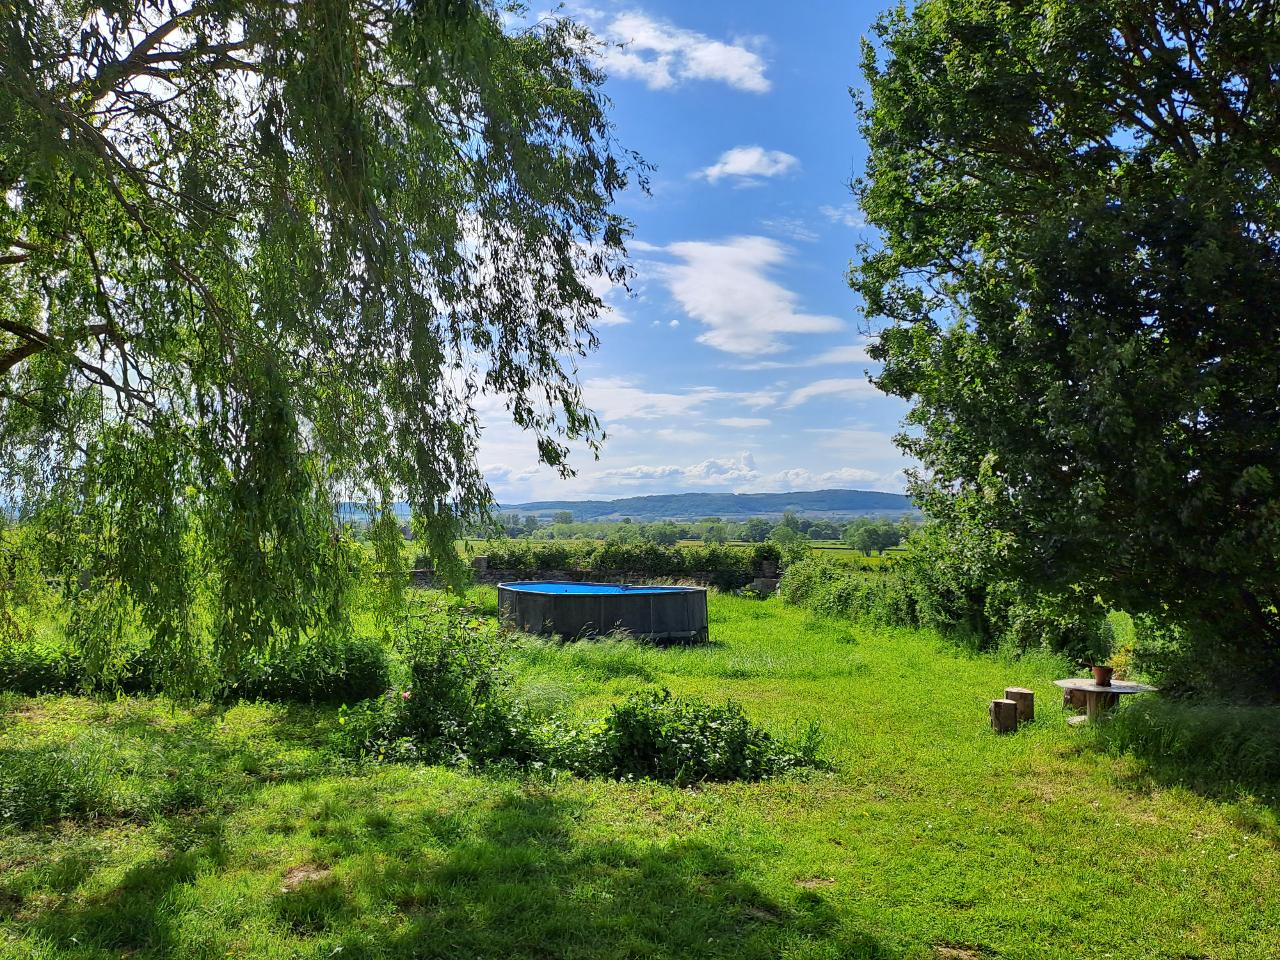 Hôte GreenGo: Gîte de campagne "La Chavoche" situé en lisière de bois et à proximité d’une rivière - Bourgogne - Image 3